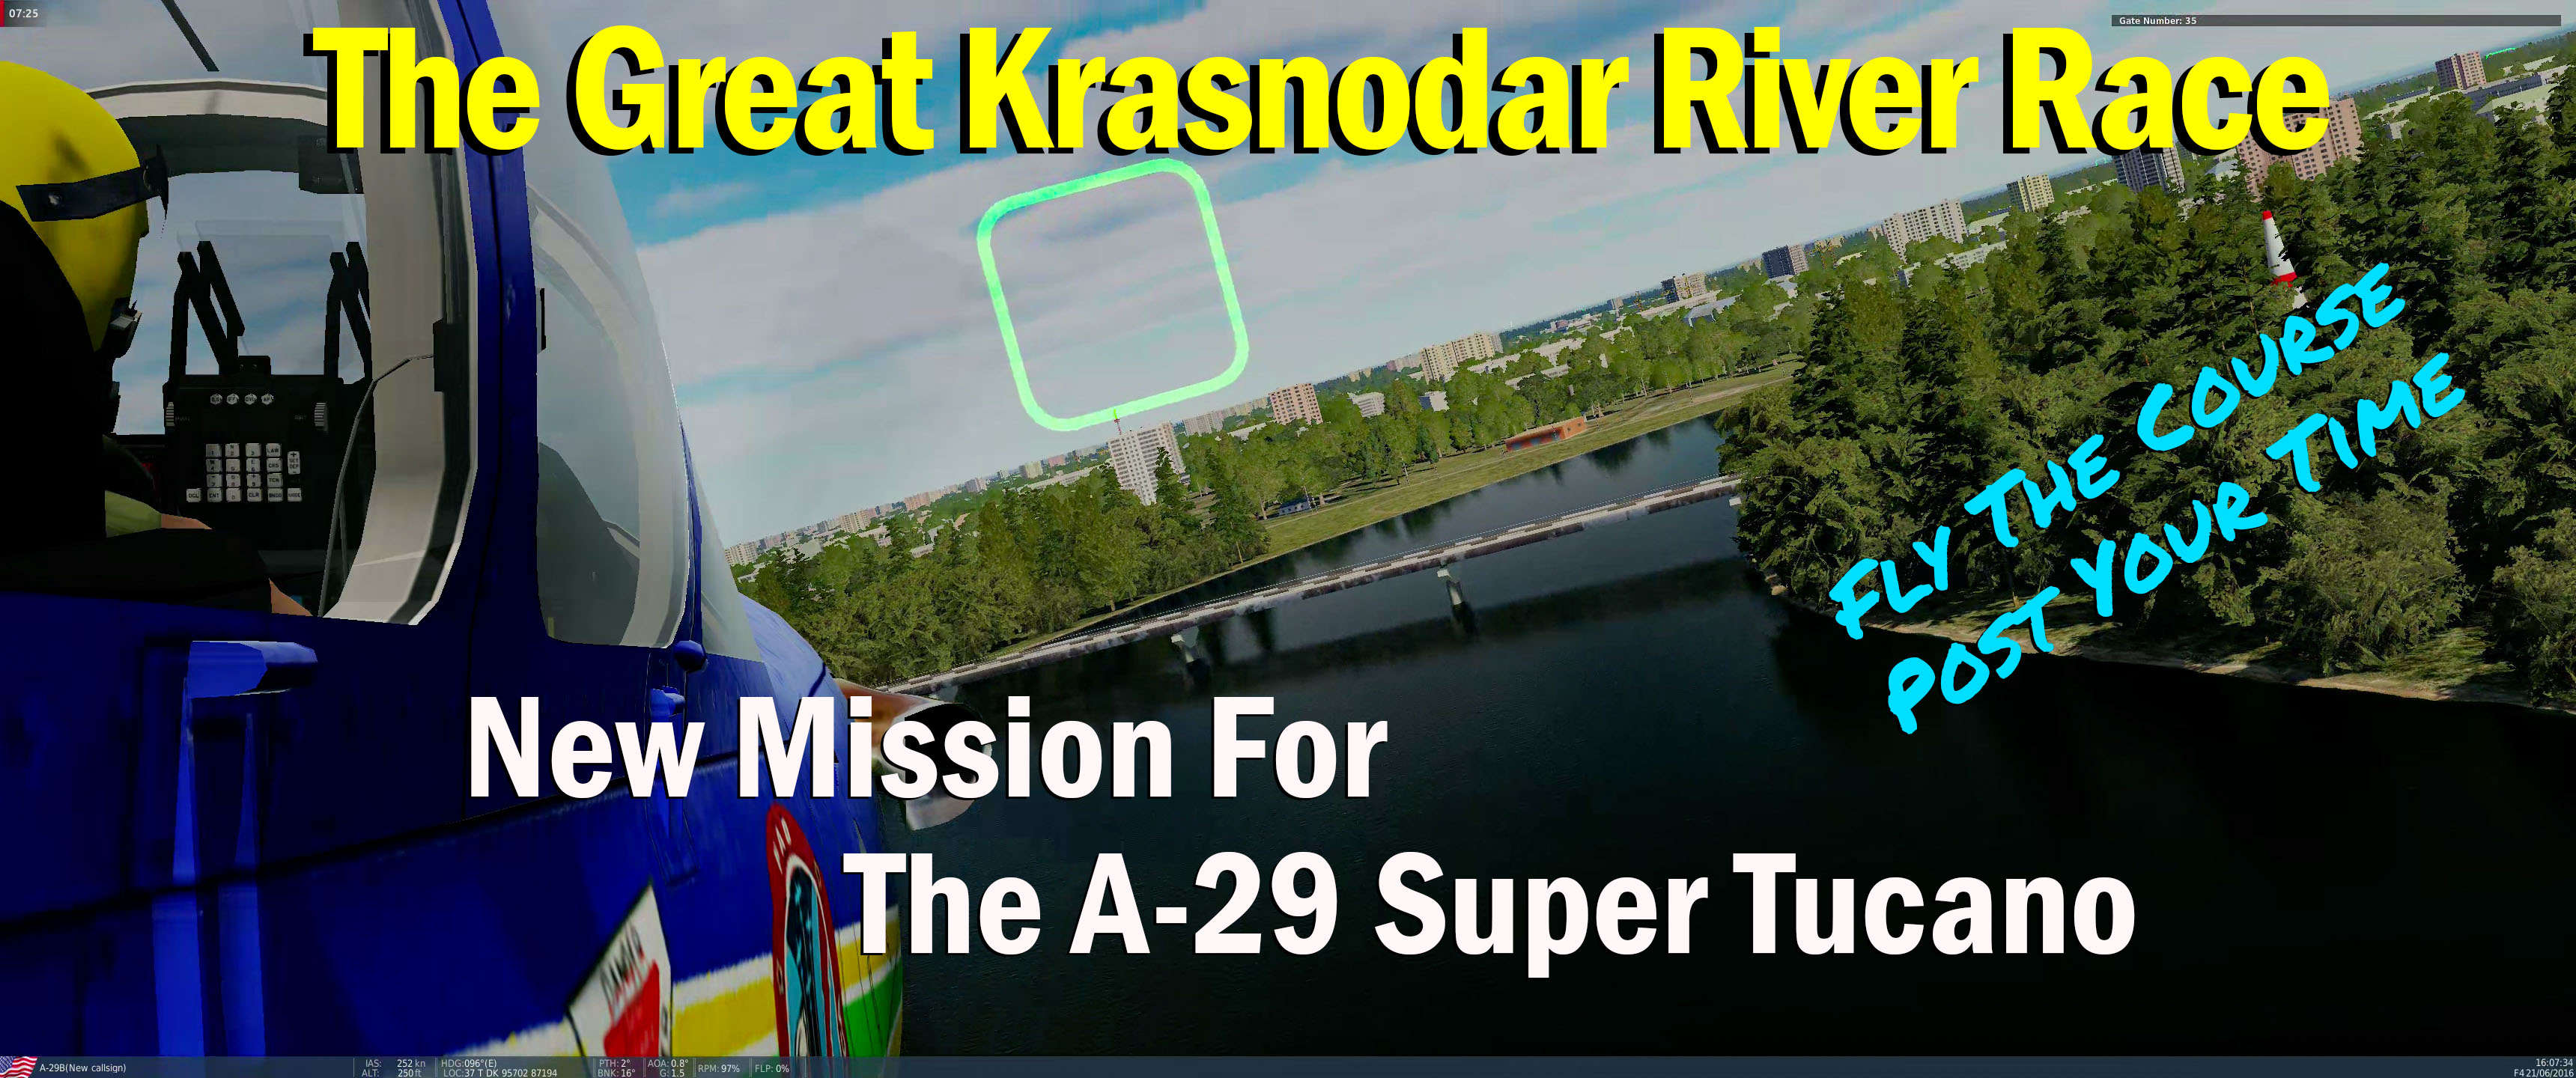 The Great Krasnodar River Race